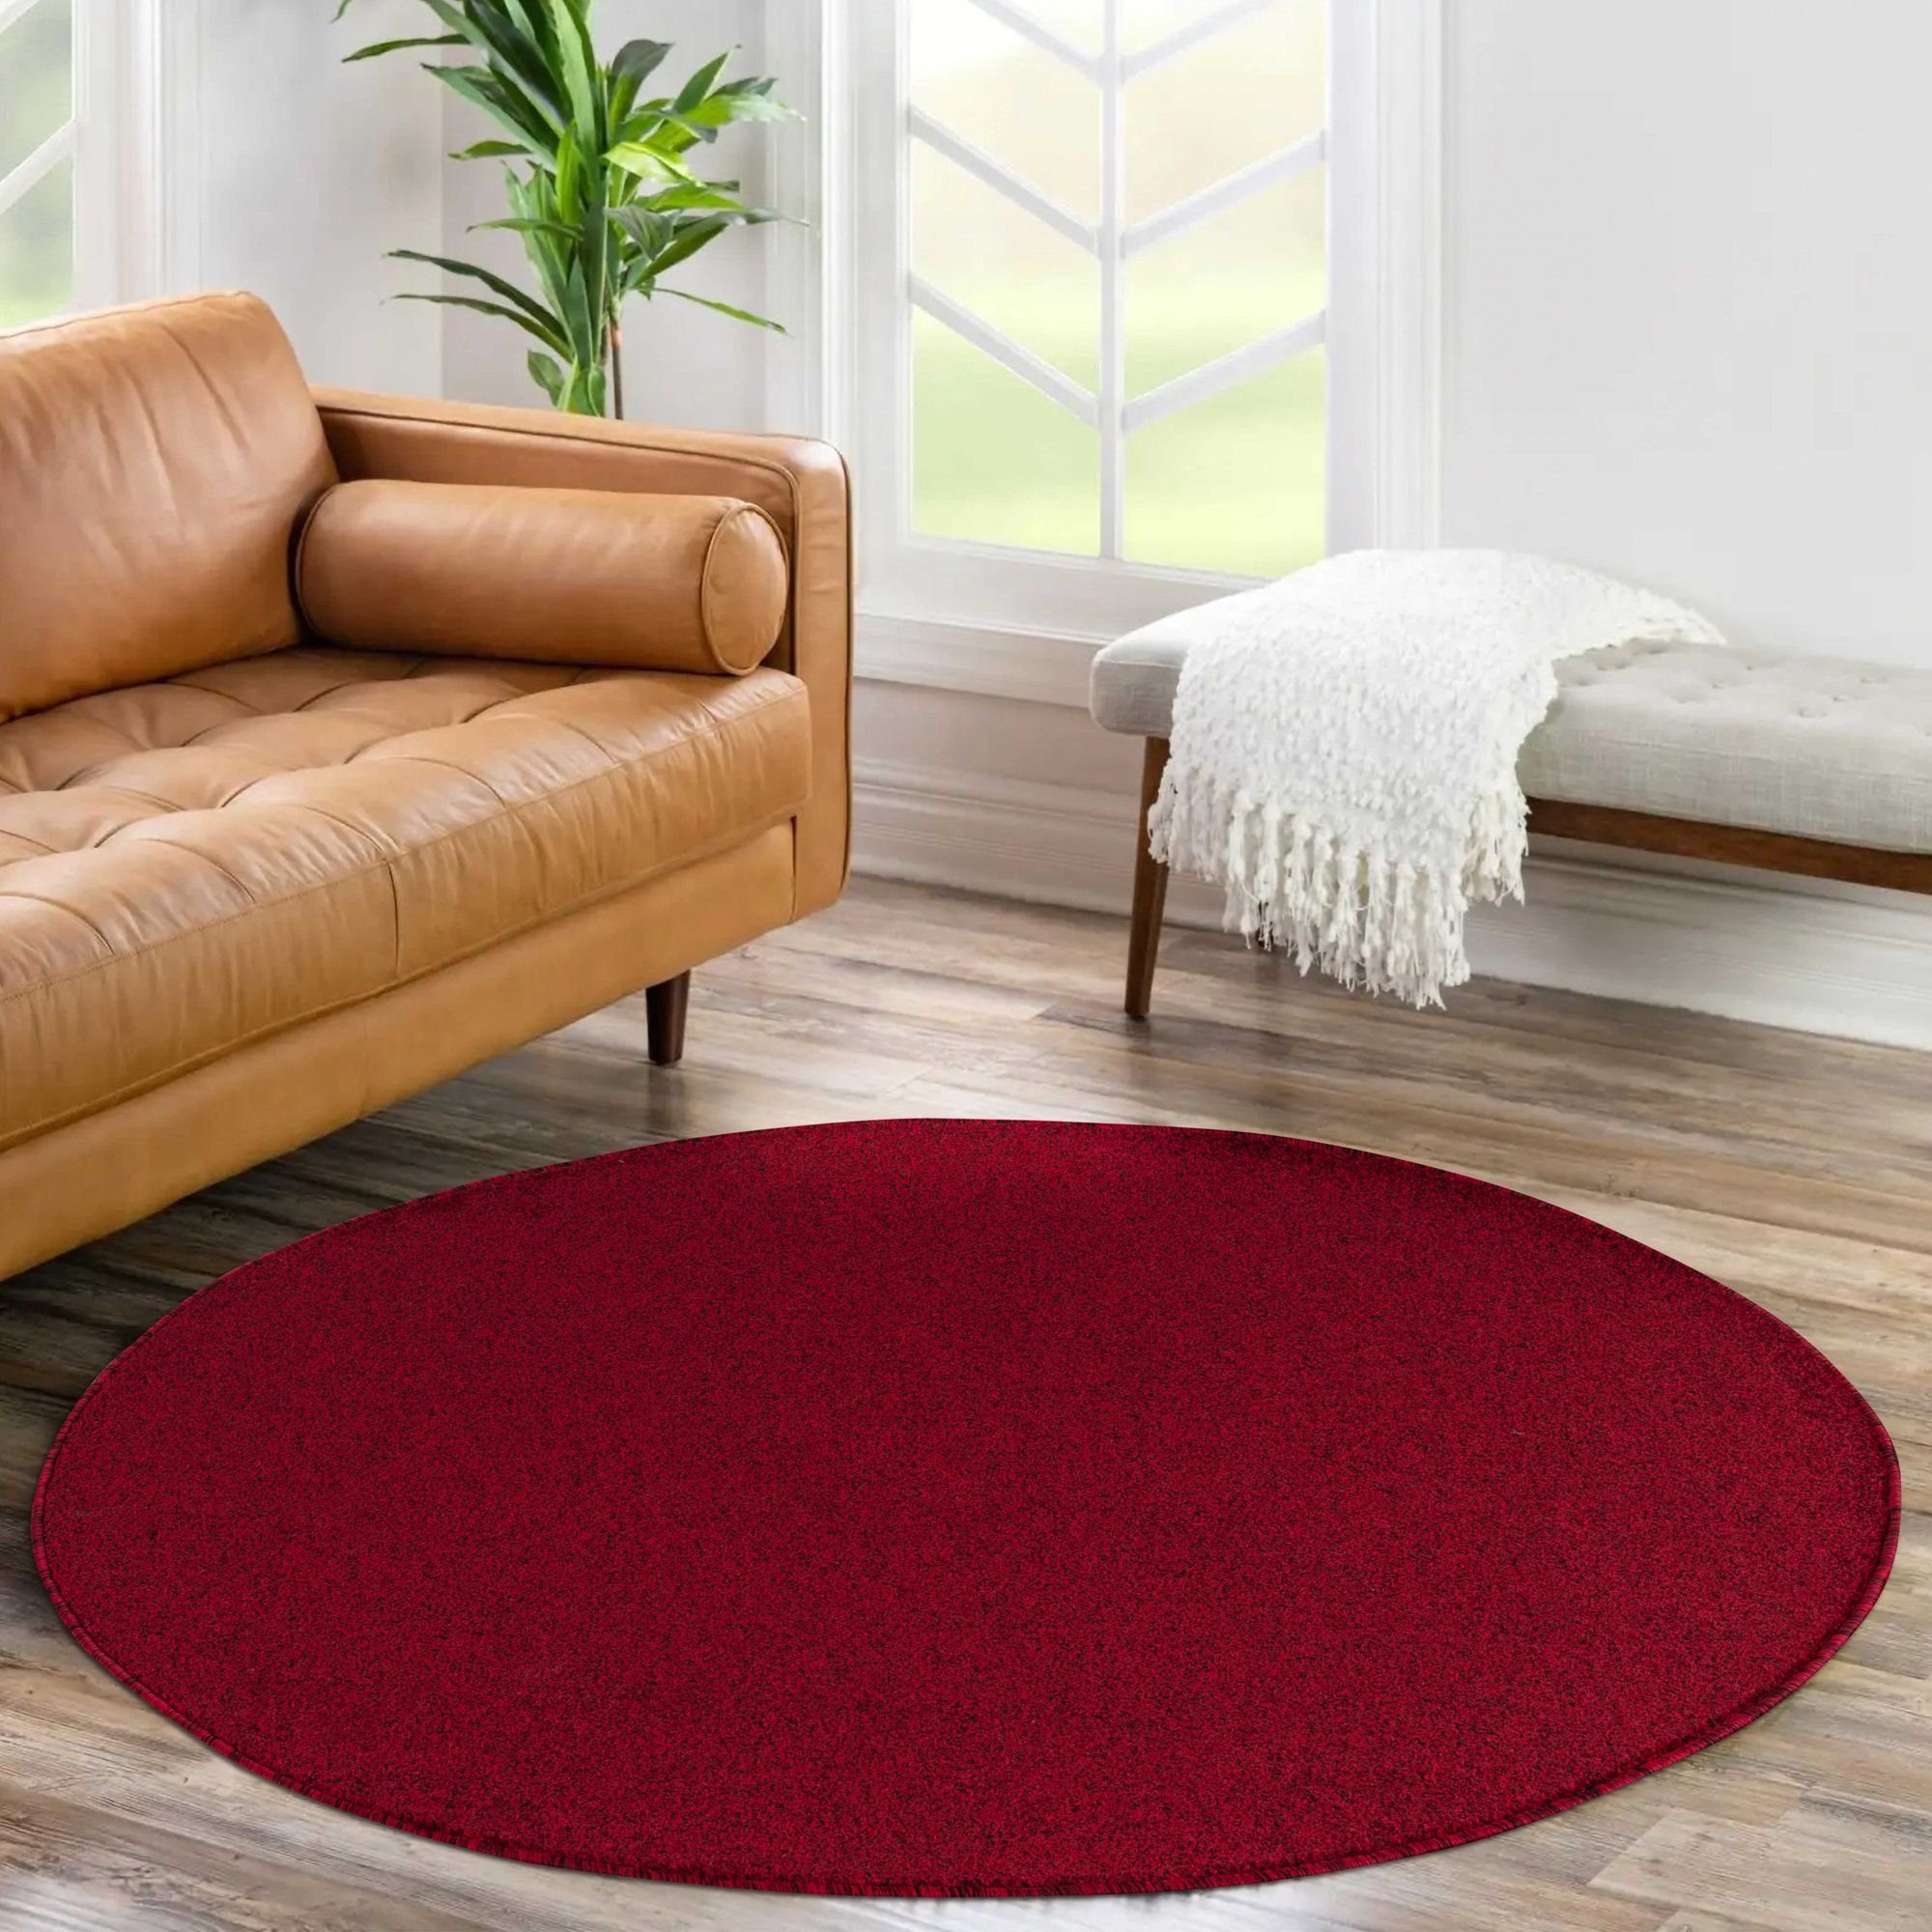 Kurzflor Unicolor Teppich mm, Carpetsale24, Wohnzimmer Einfarbig Runder Veloursteppich Rot Höhe: 11 - Flauschig Einfarbig, Weich Rund,